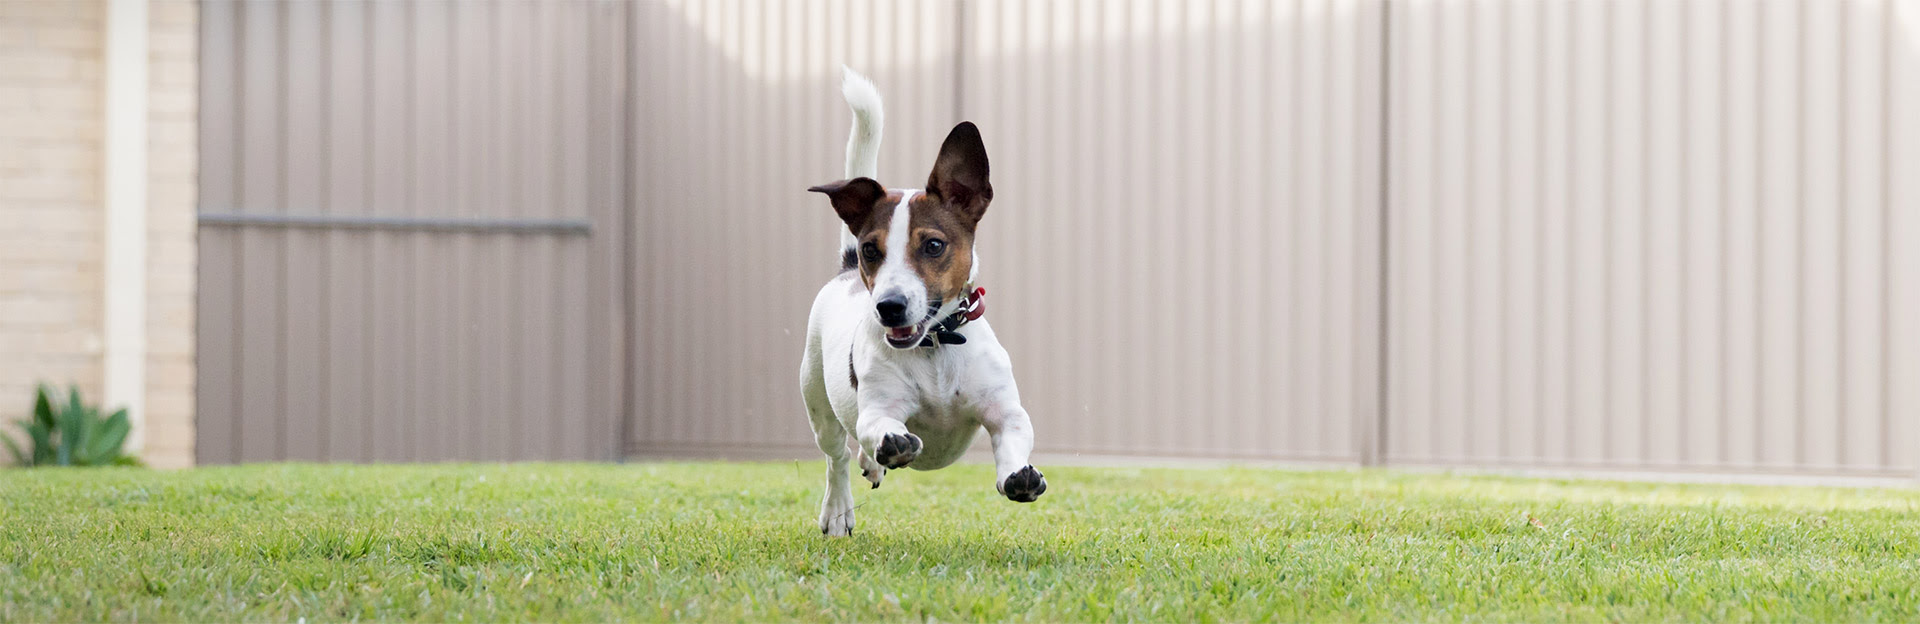 A happy Jack Russel Terrier runs in a backyard